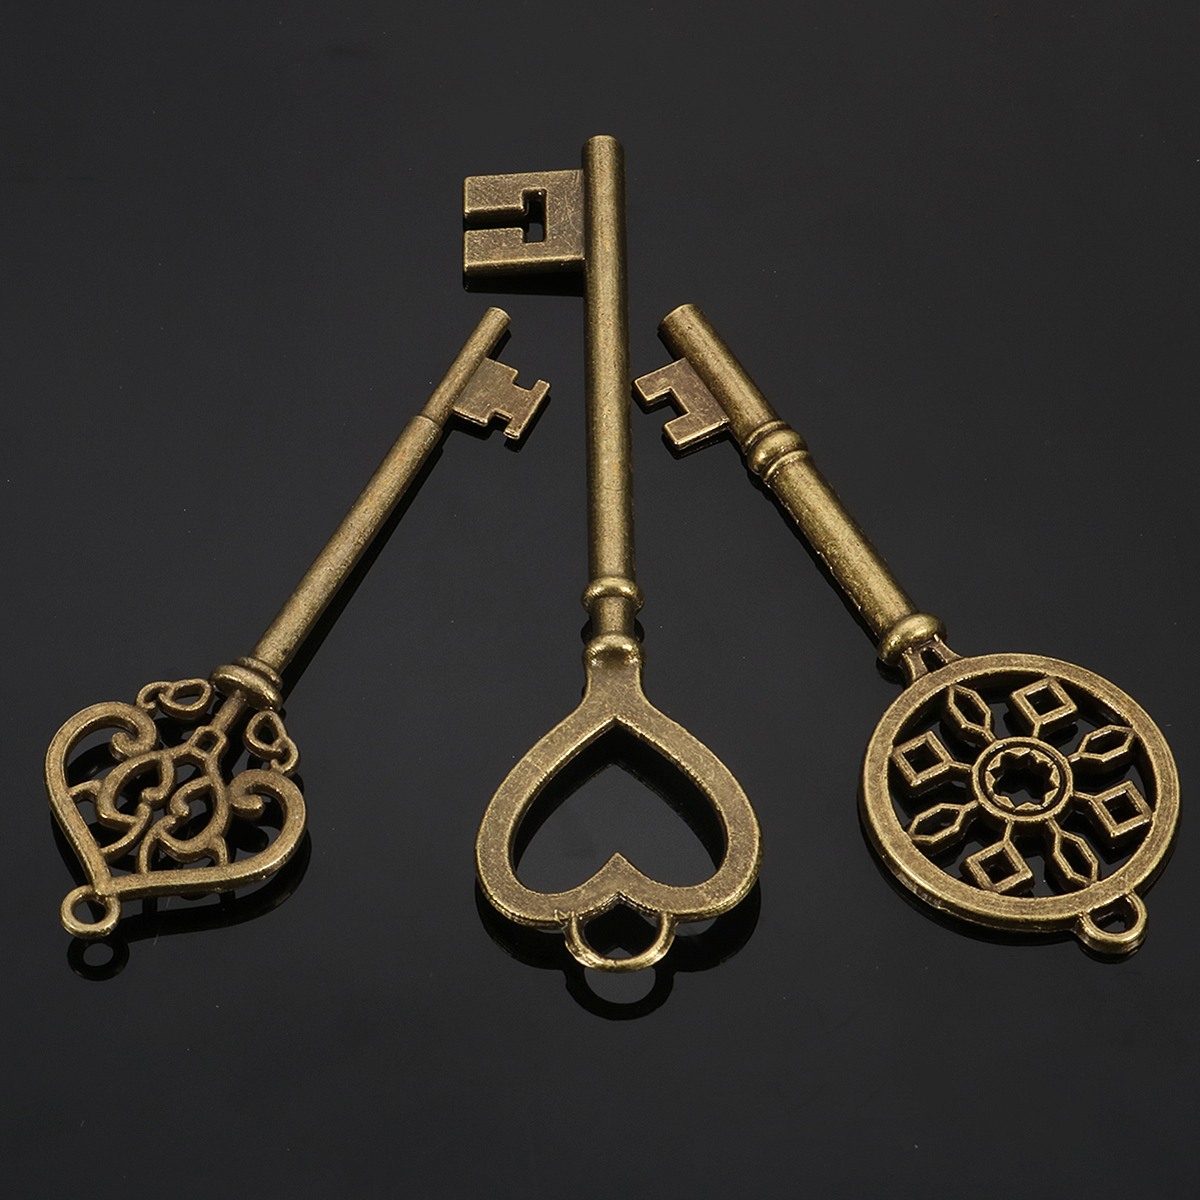 10Pcs Mixed Bronze Key Necklace Pendant Charm DIY